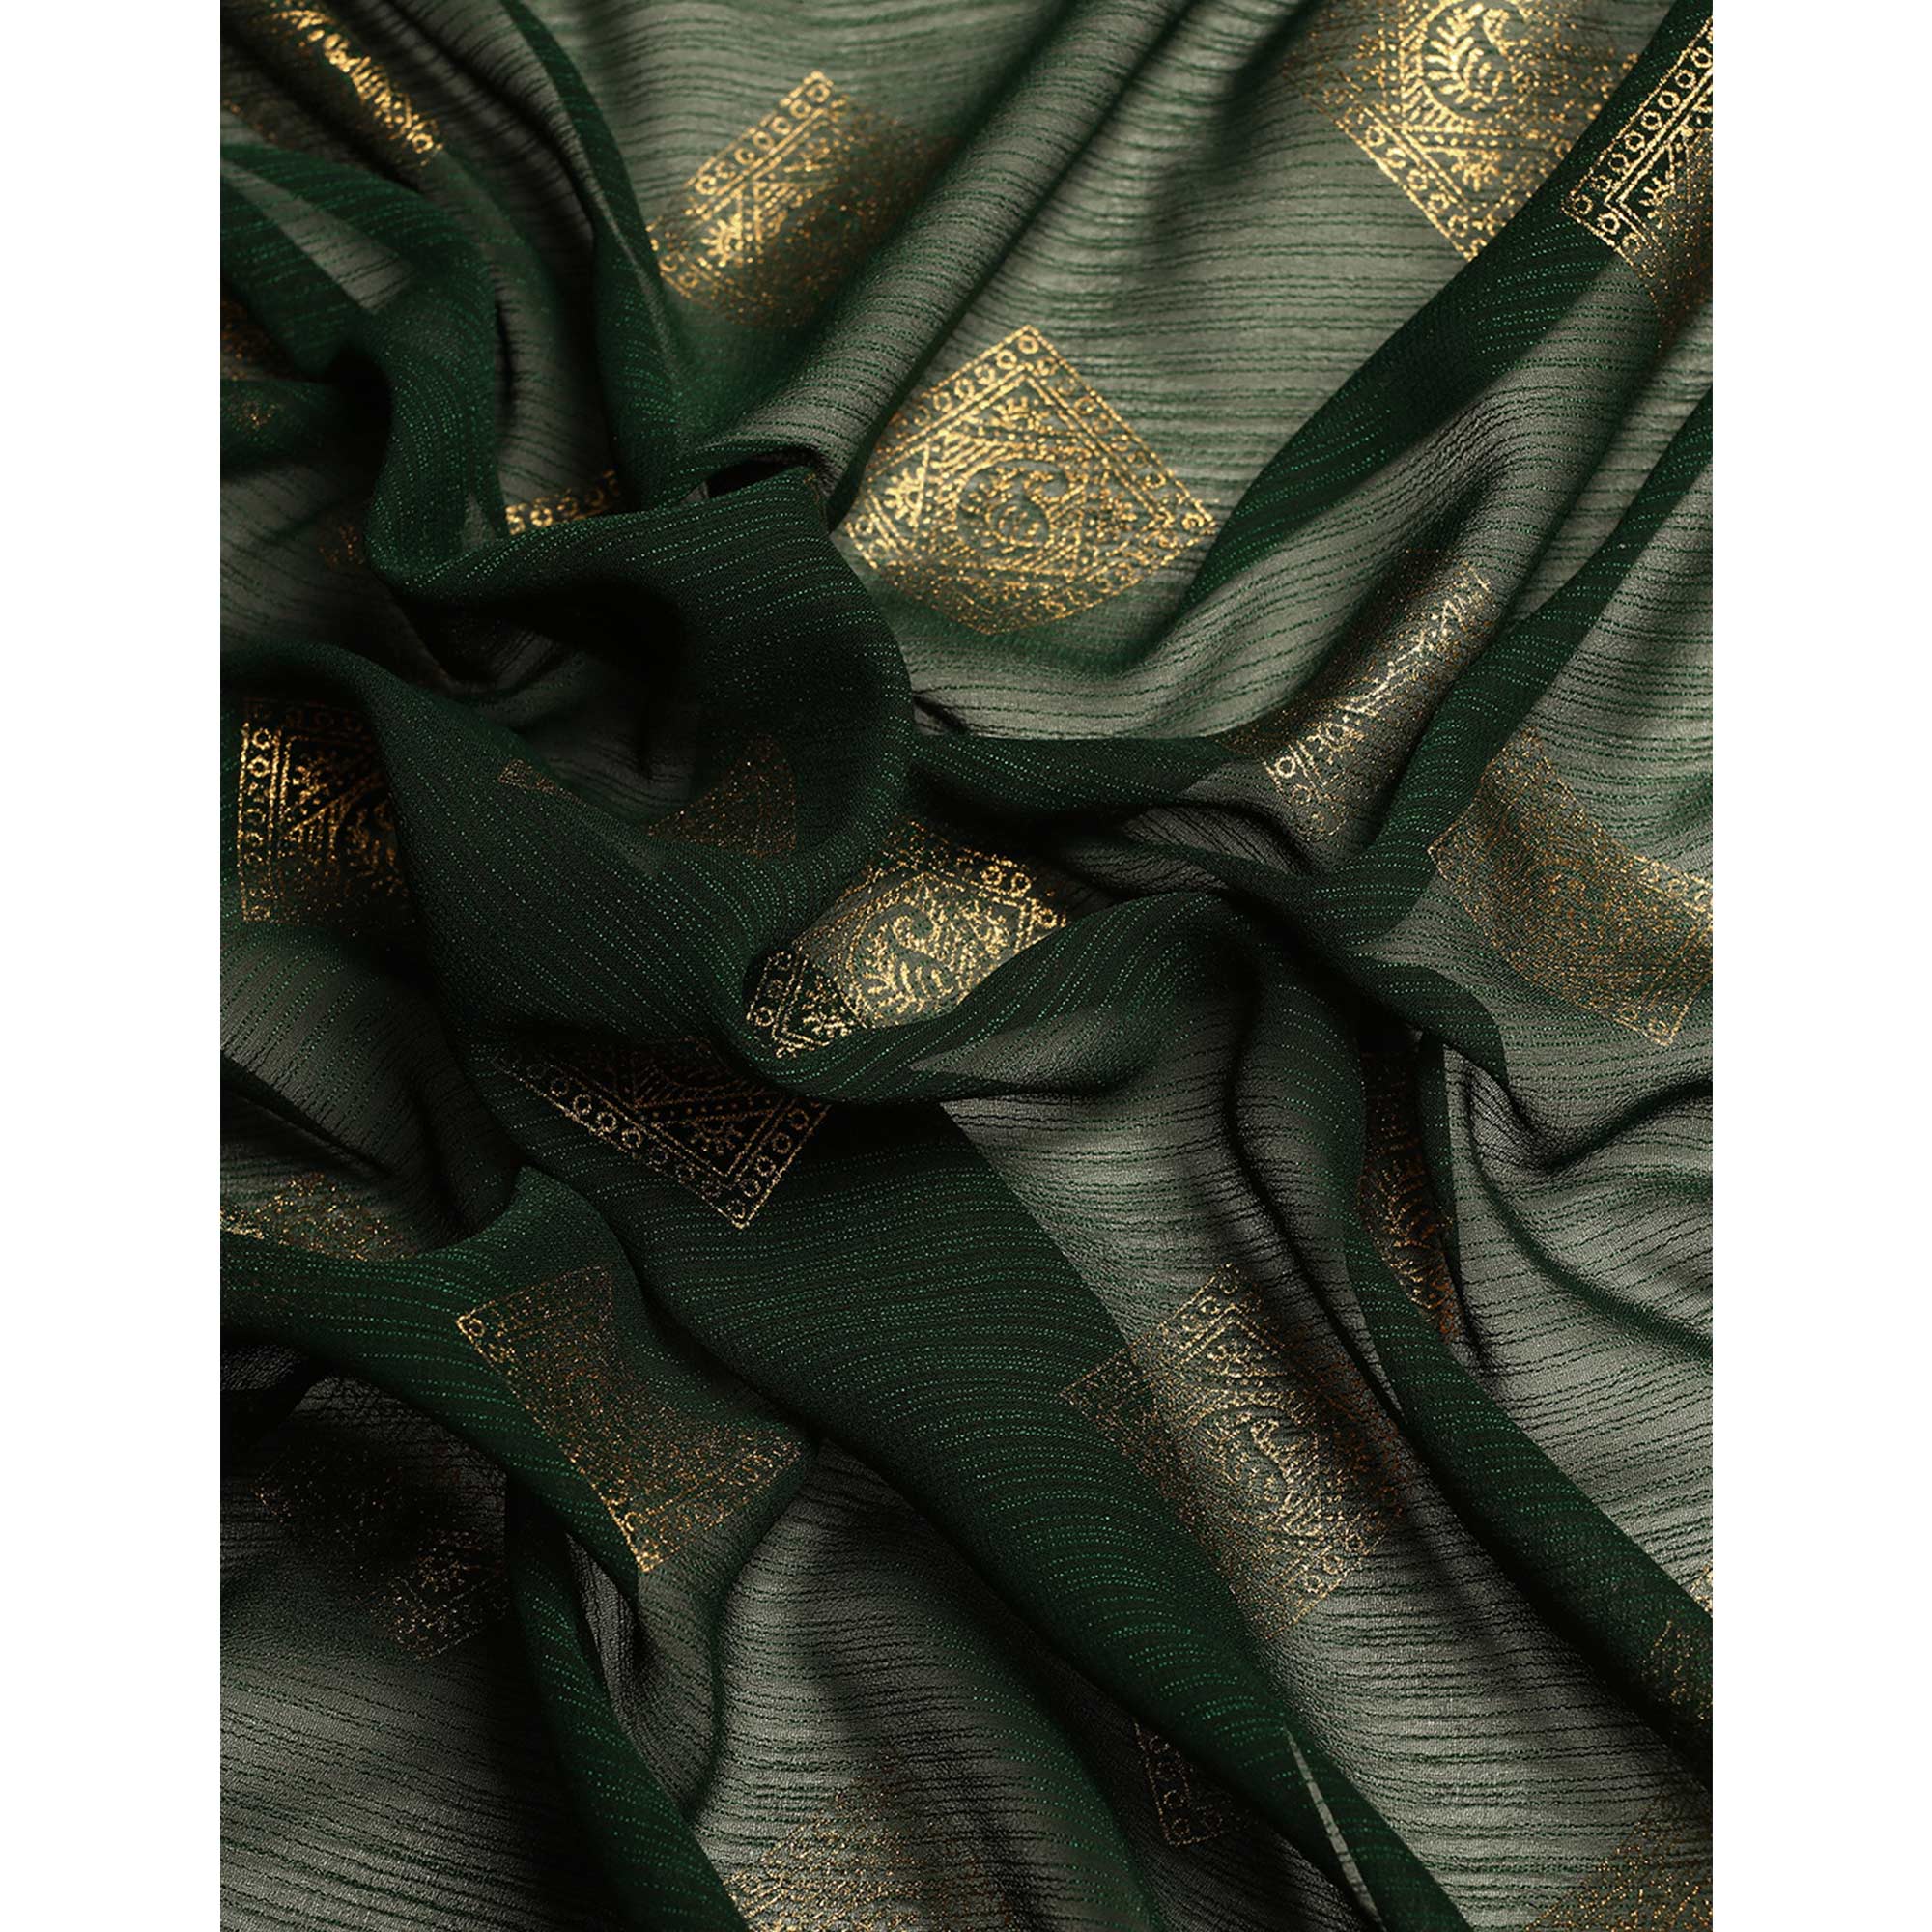 Green Foil Printed Chiffon Saree With Tassels